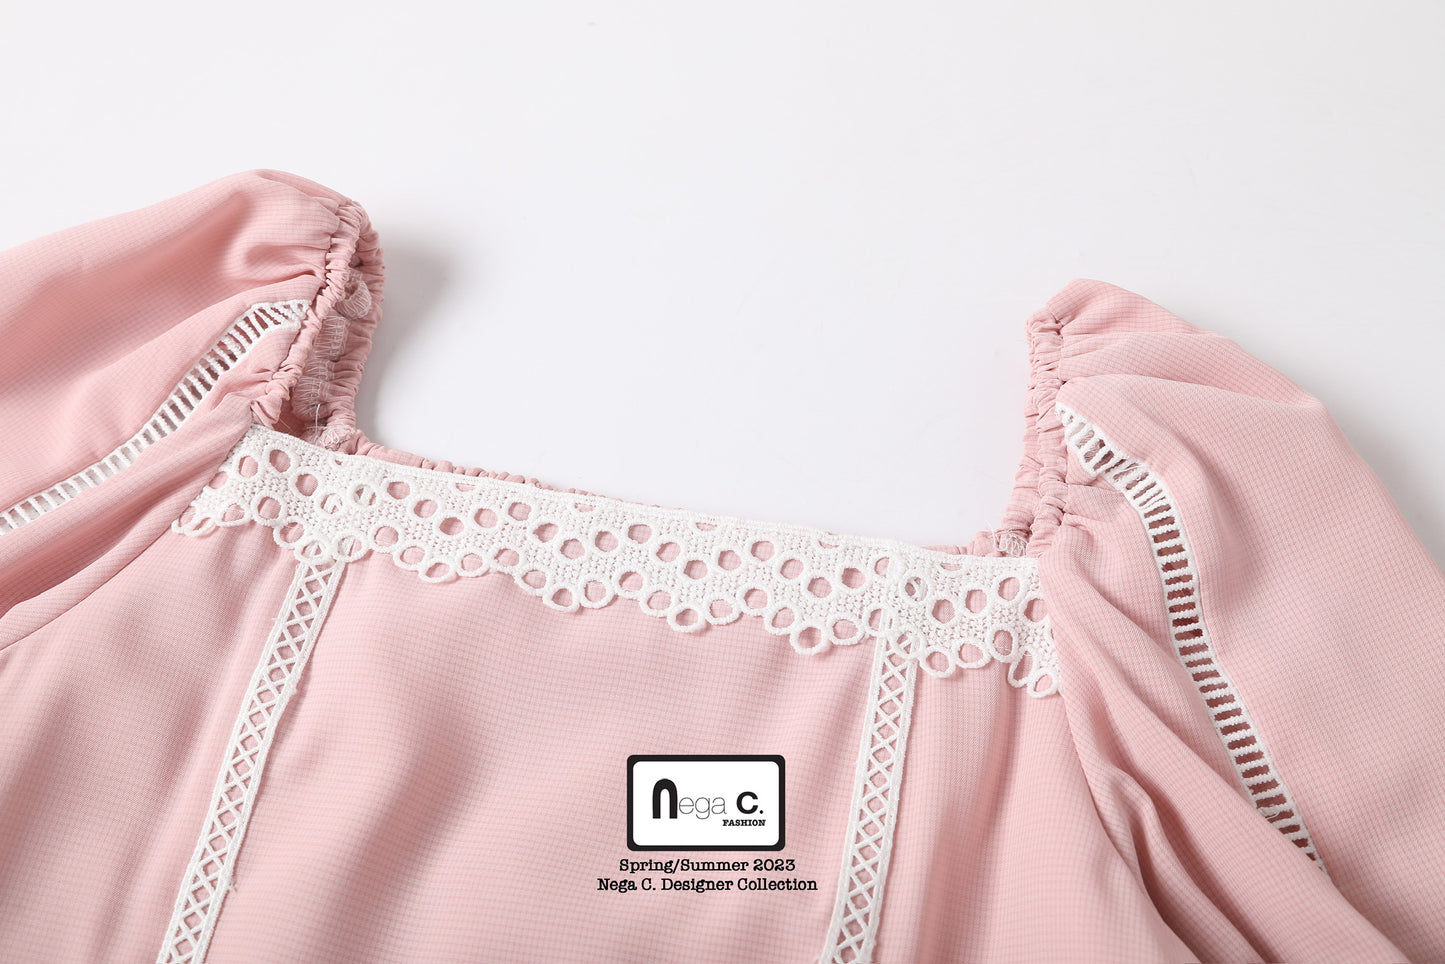 Nega C. 甜美感方領蕾絲泡泡袖上衣| 粉紅色| 有裡襯